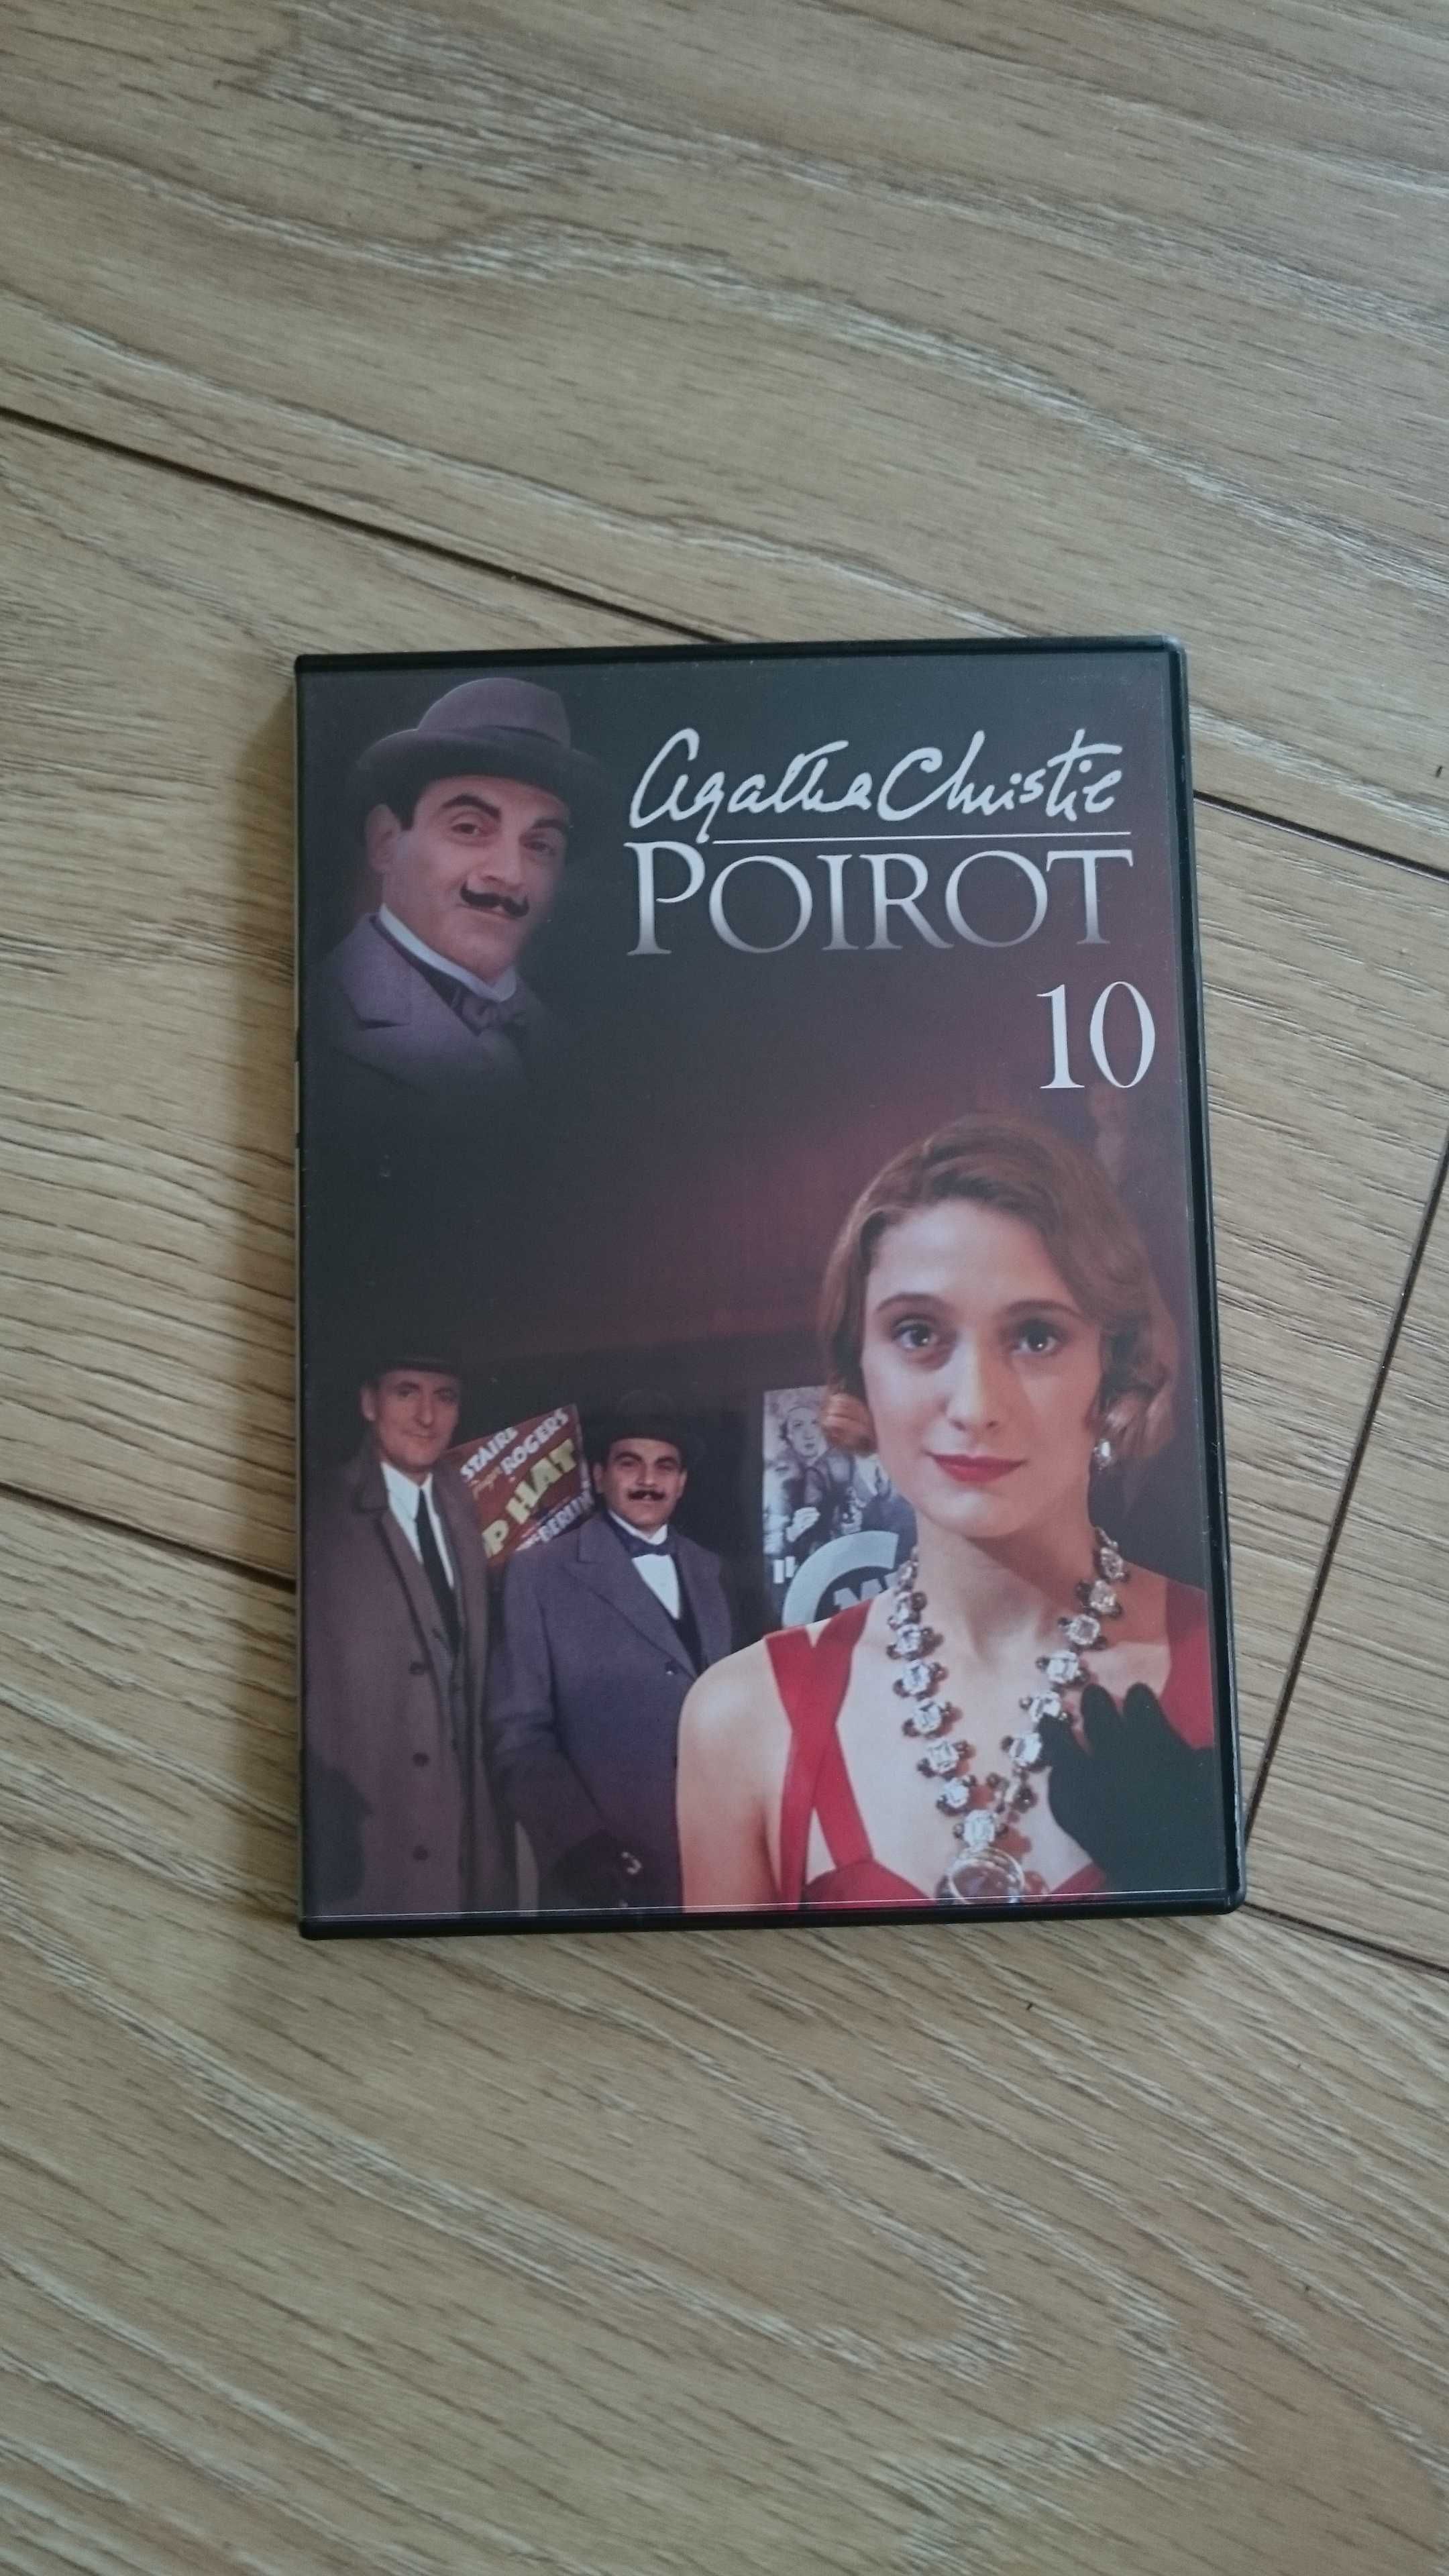 Poirot nr 10: Porwanie premiera/ Gwiazda zachodu dvd